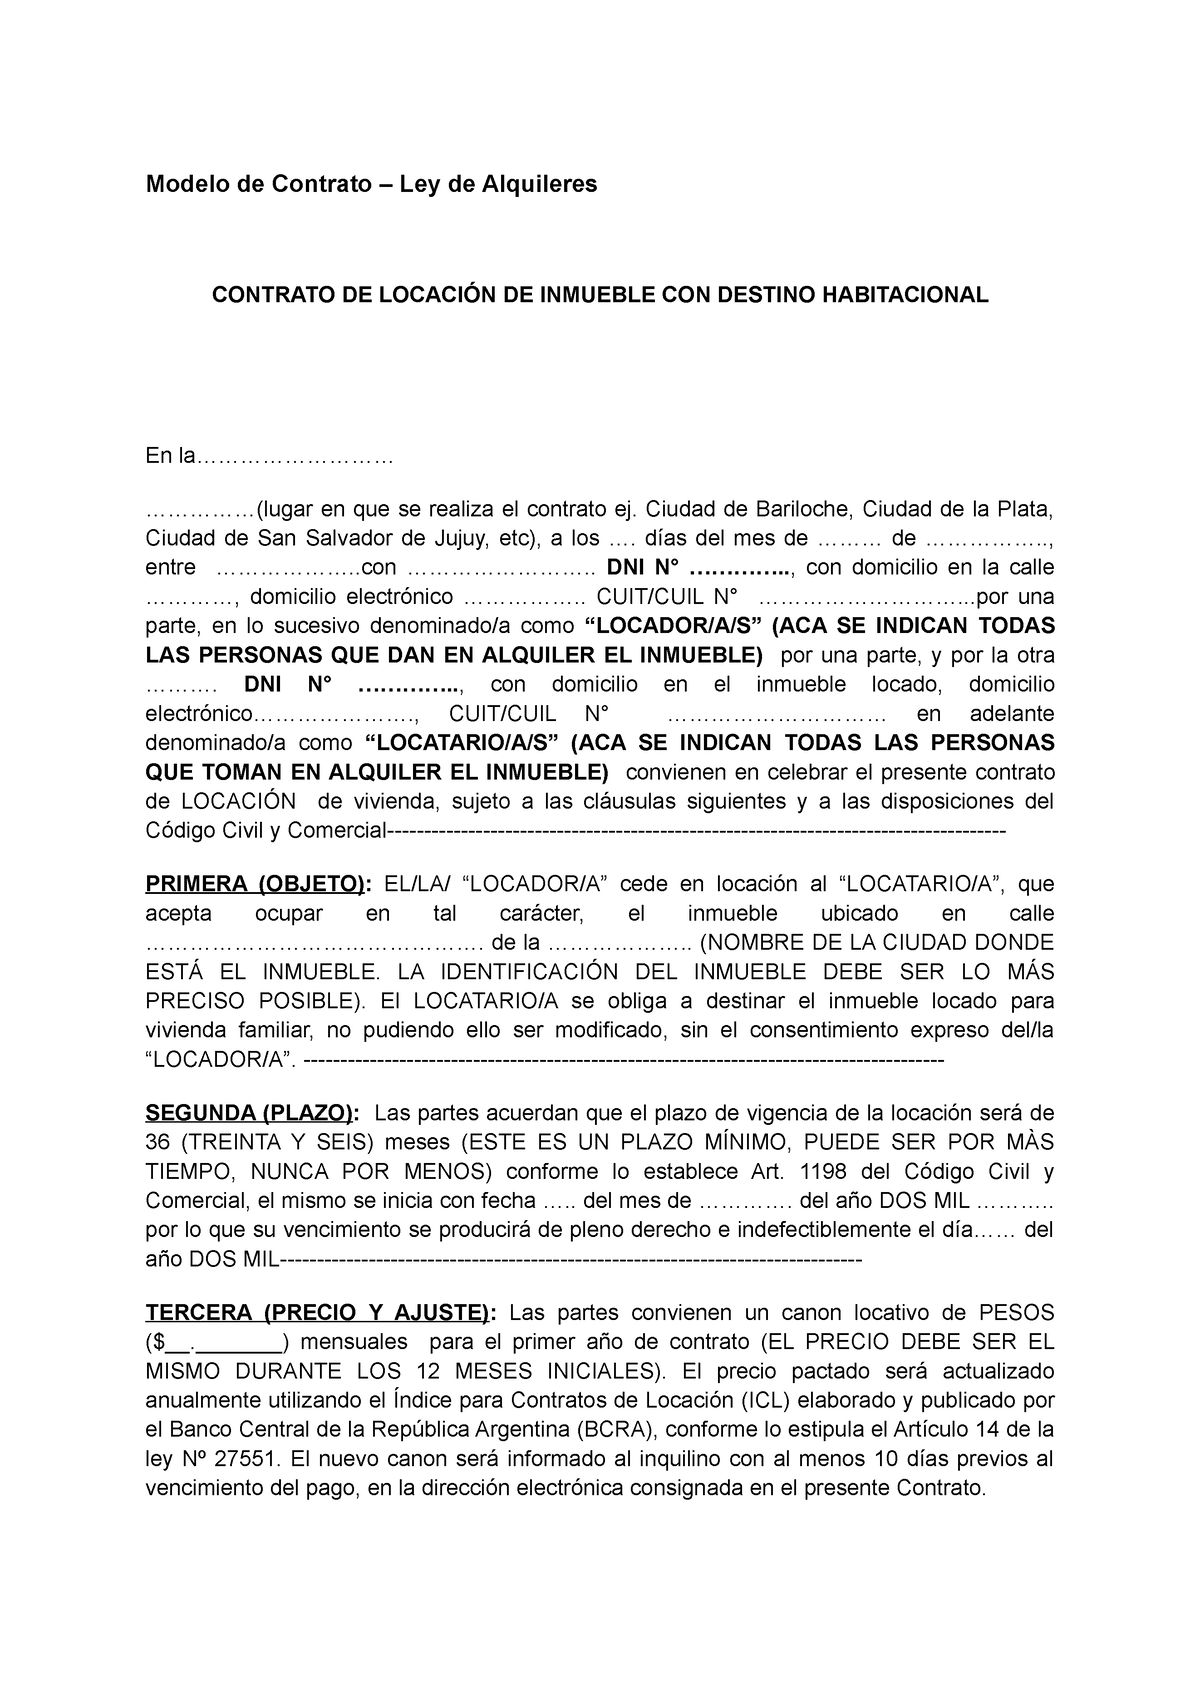 Modelo De Contrato De Locacion Modelo De Contrato Ley De Alquileres Contrato De LocaciÓn De 6769